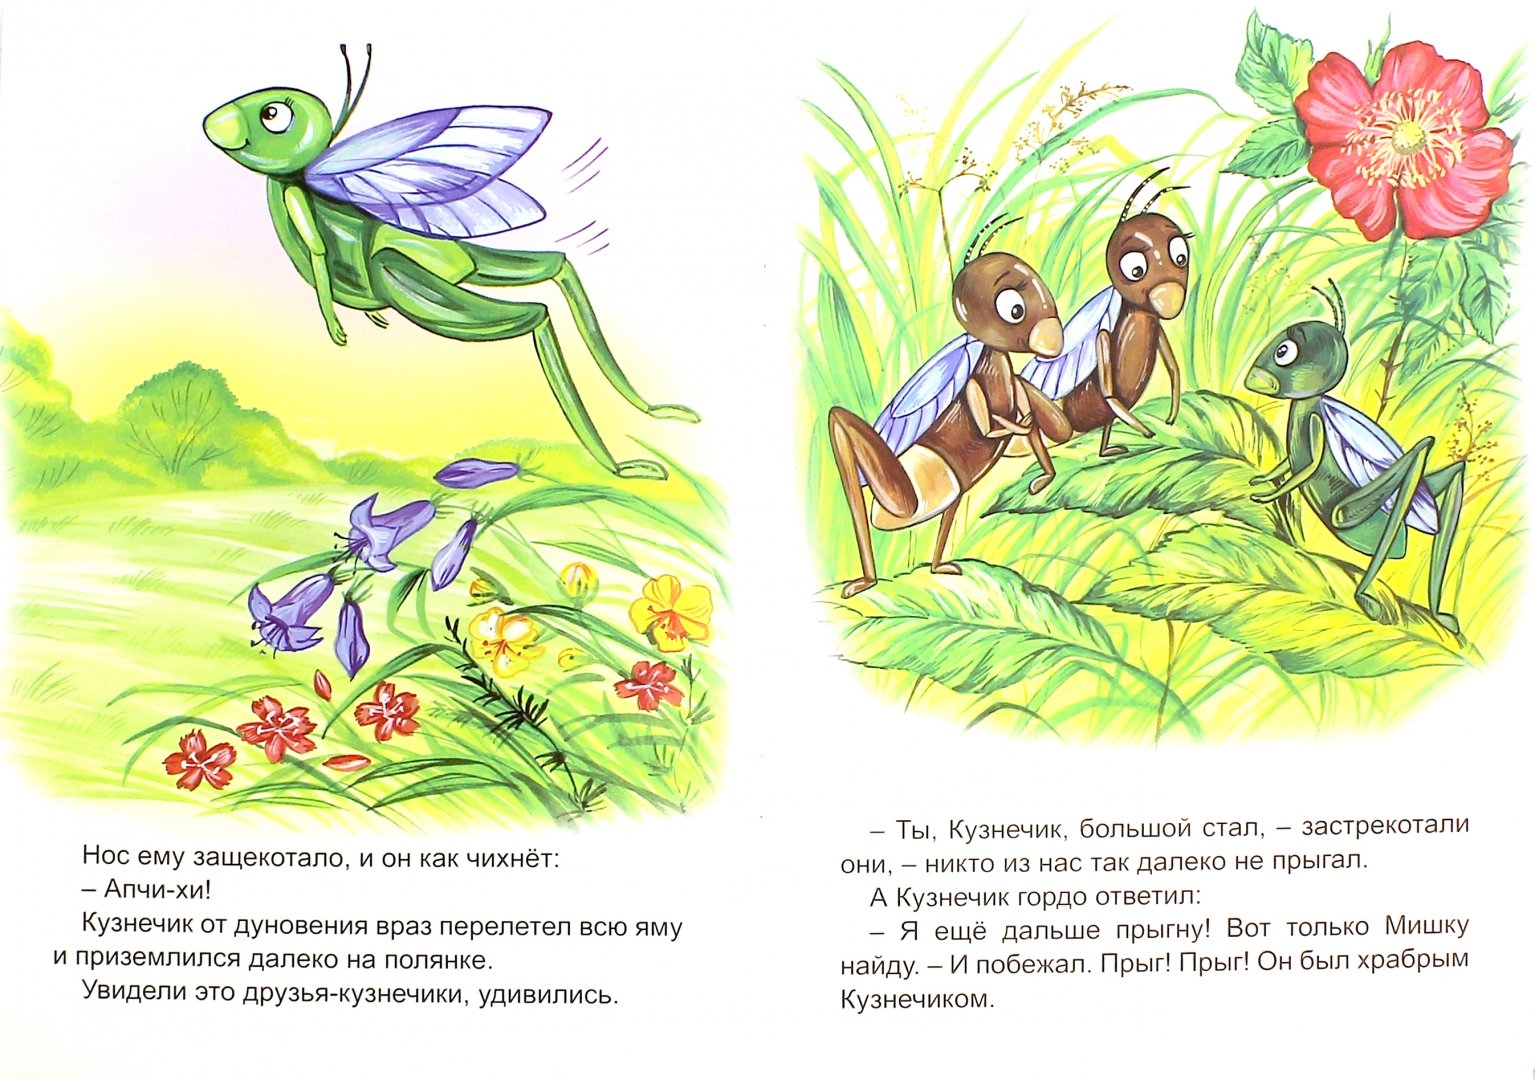 Иллюстрация 1 из 14 для Волшебные лесные сказки - Павел Гусев | Лабиринт - книги. Источник: Лабиринт